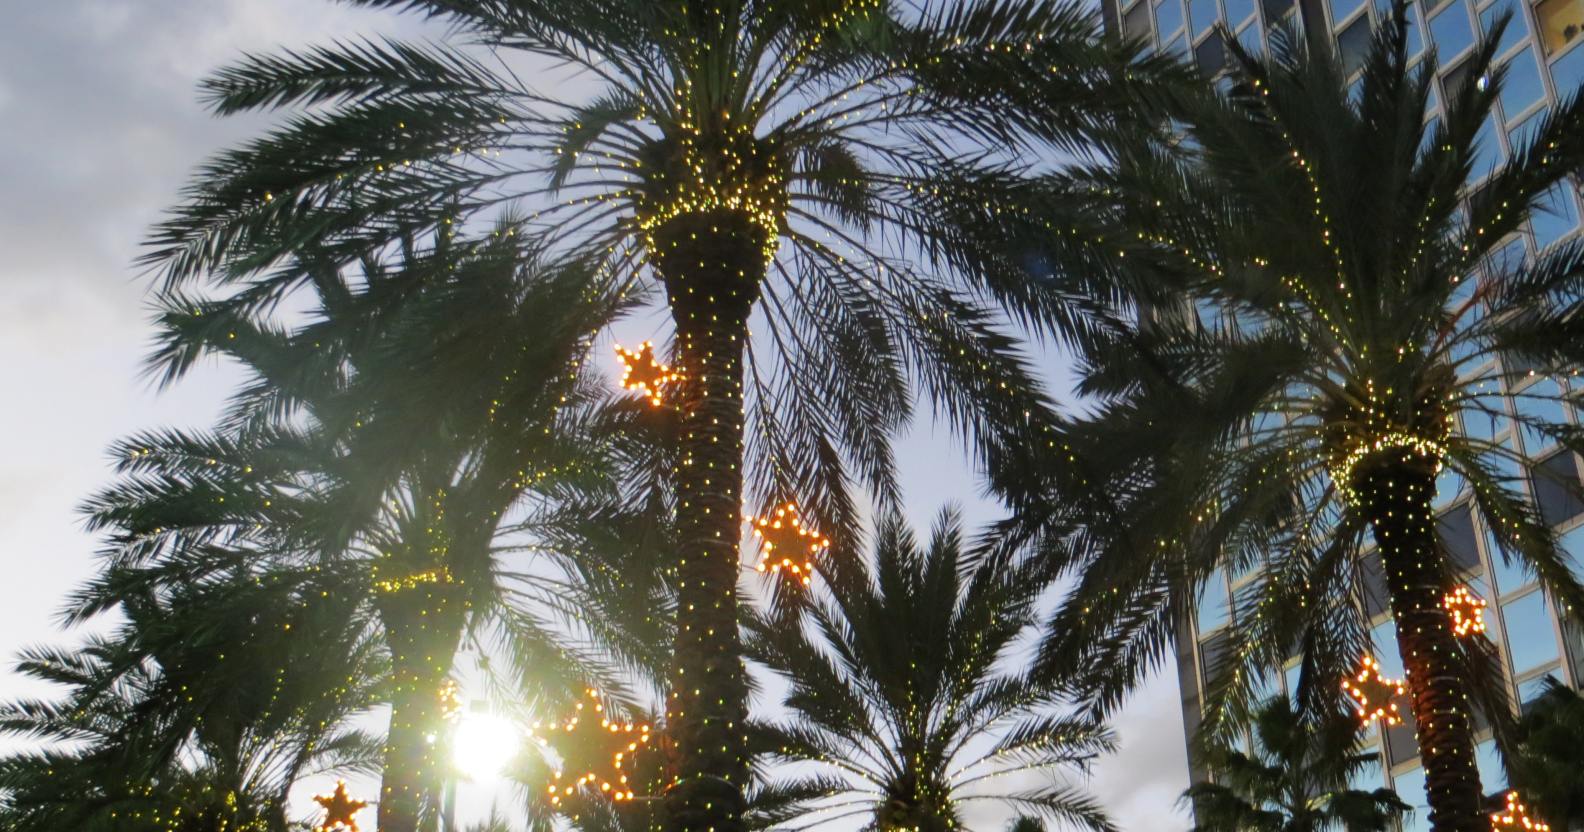 Christmas quiz: Christmas palm trees